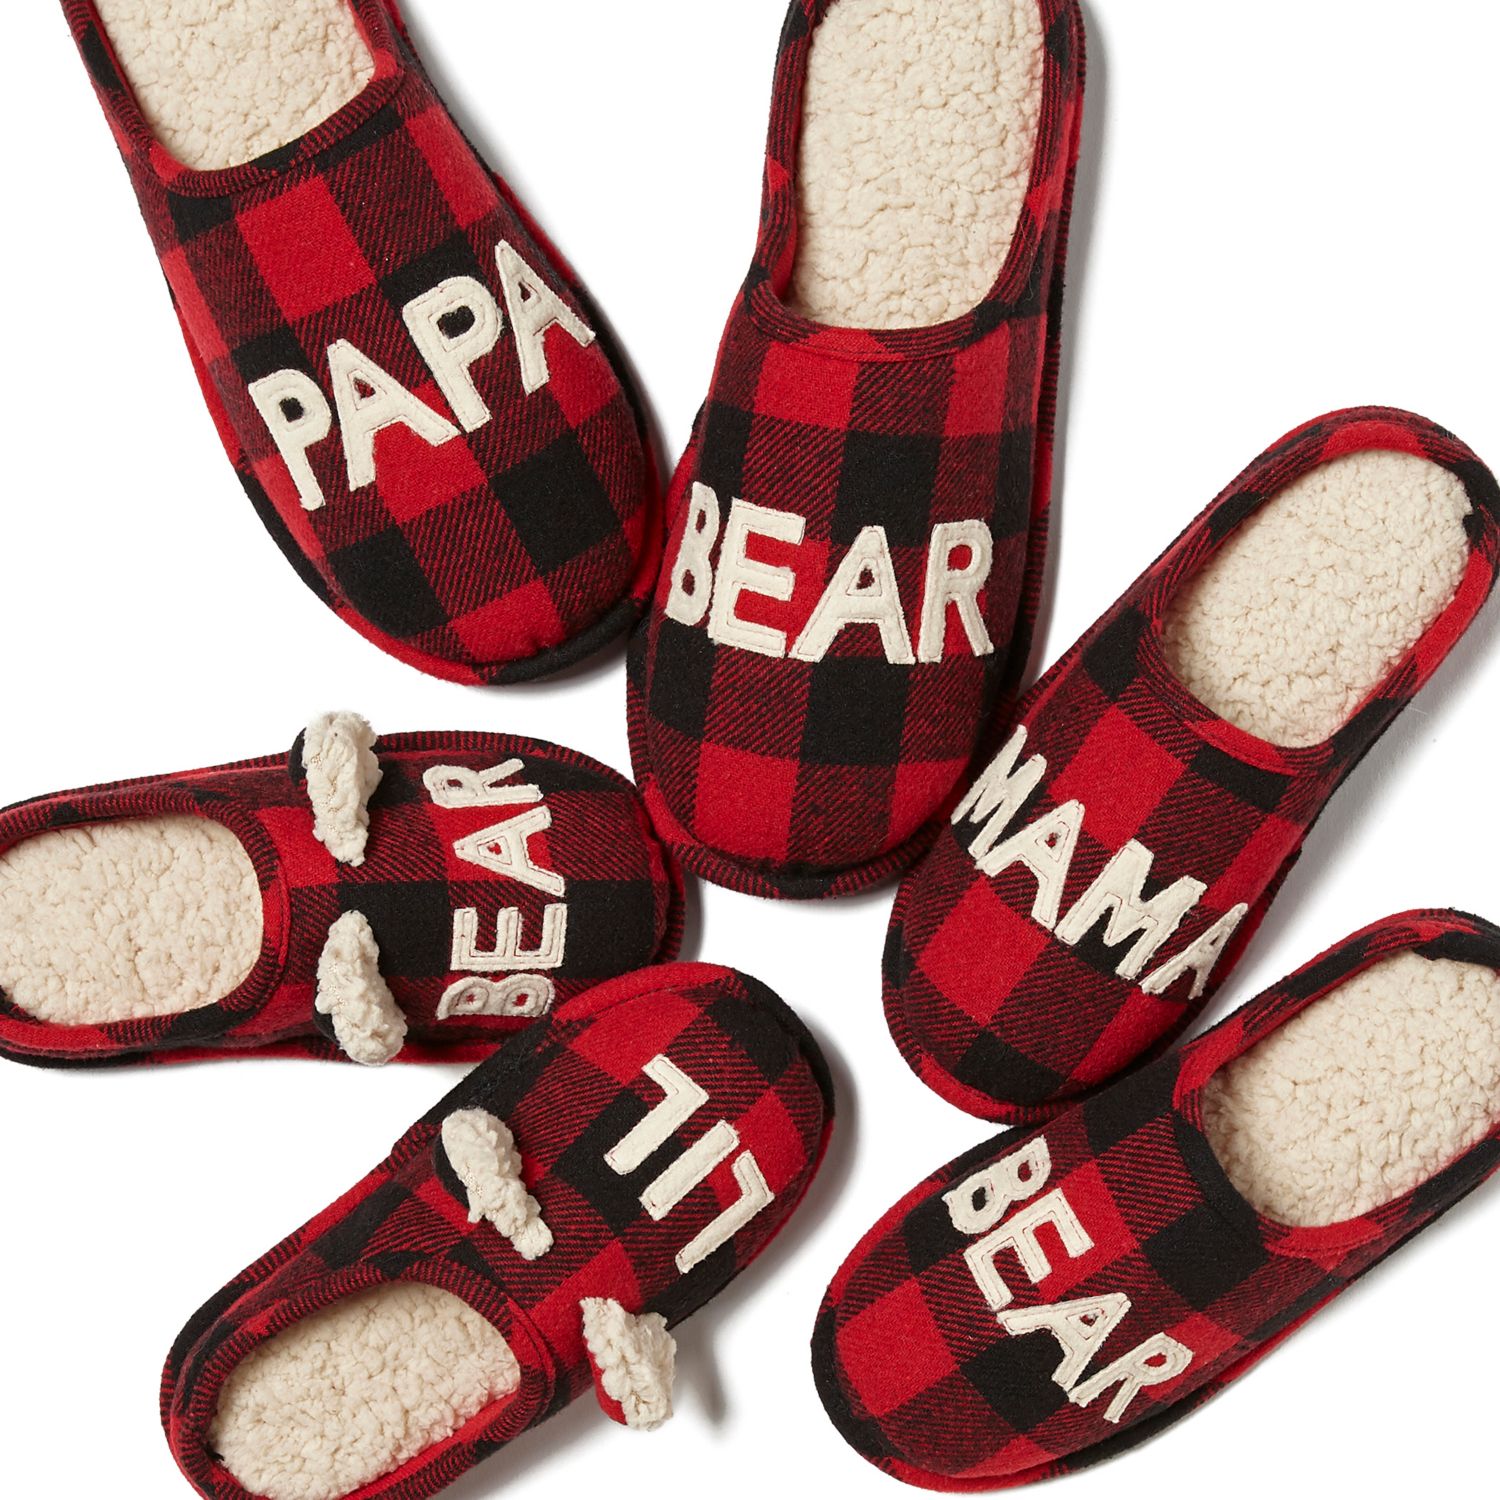 red dearfoam slippers